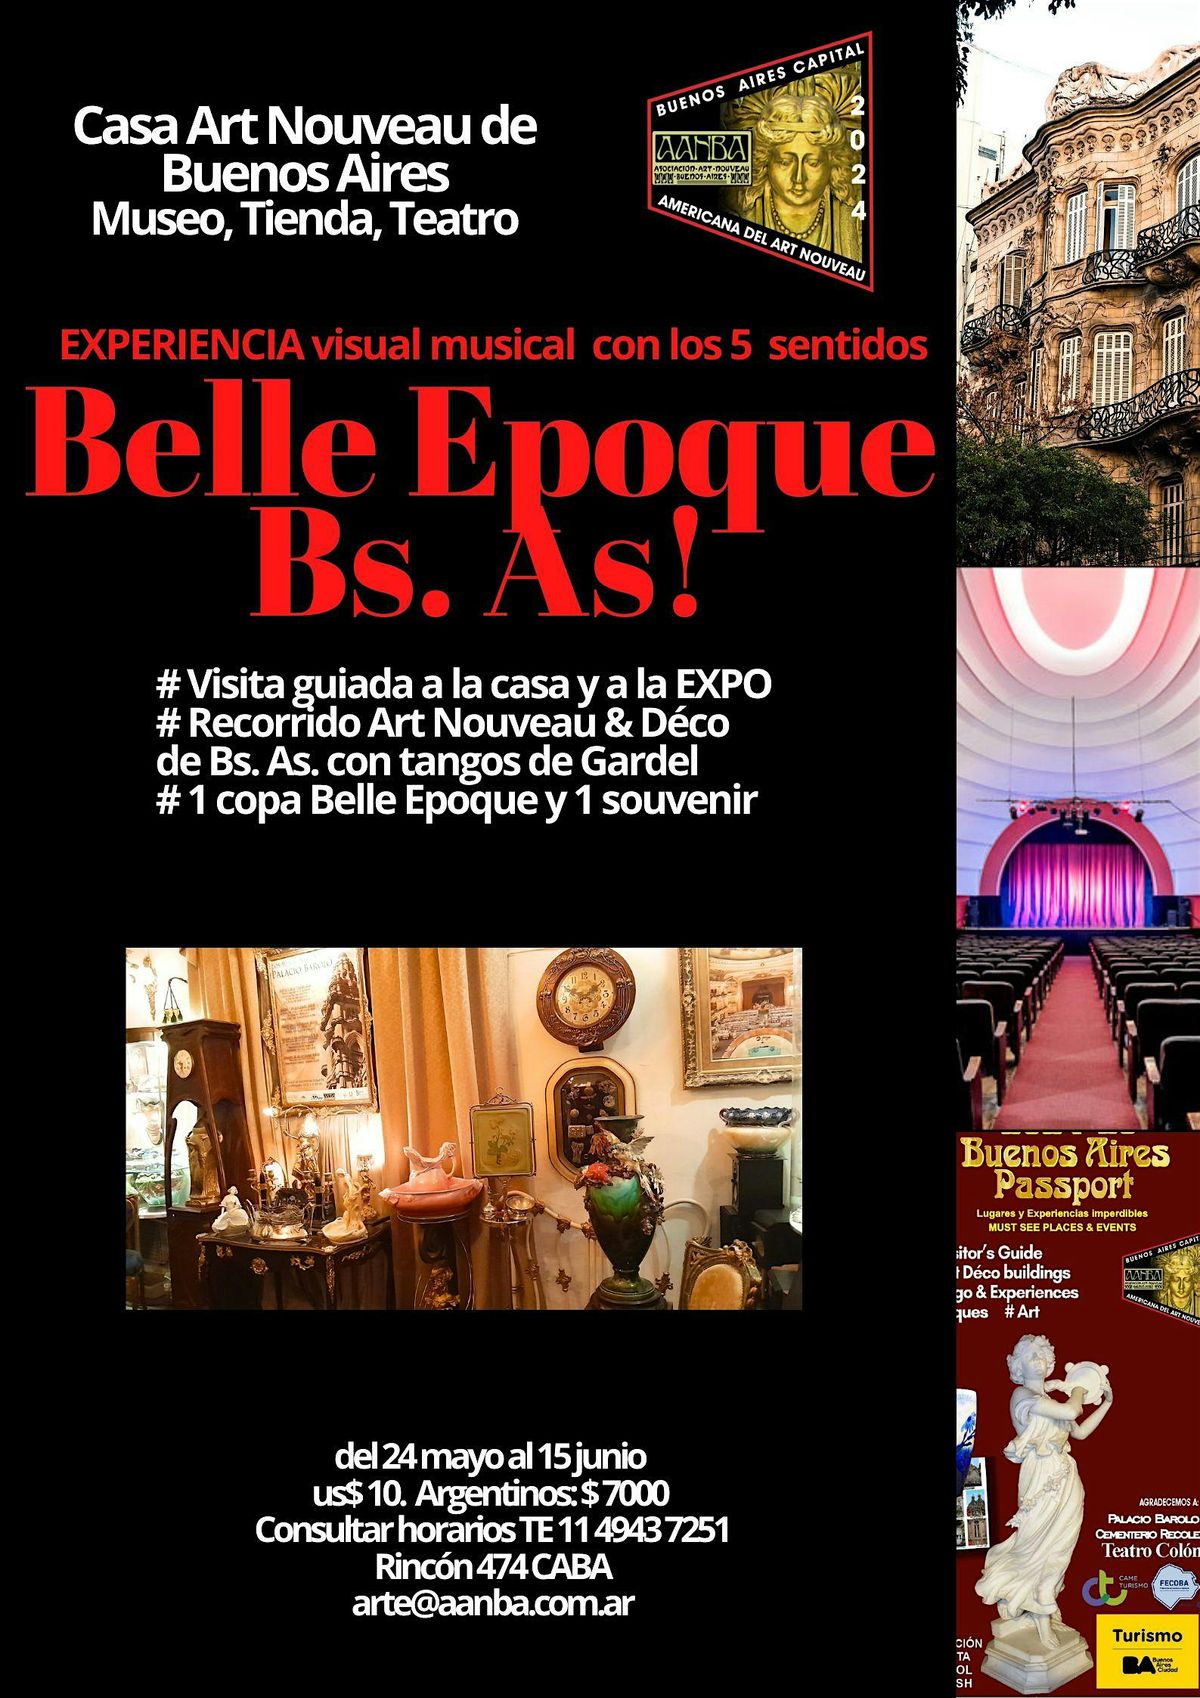 EXPERIENCIA Belle Epoque Bs. As. con visita, show, Expo y copa Art Nouveau